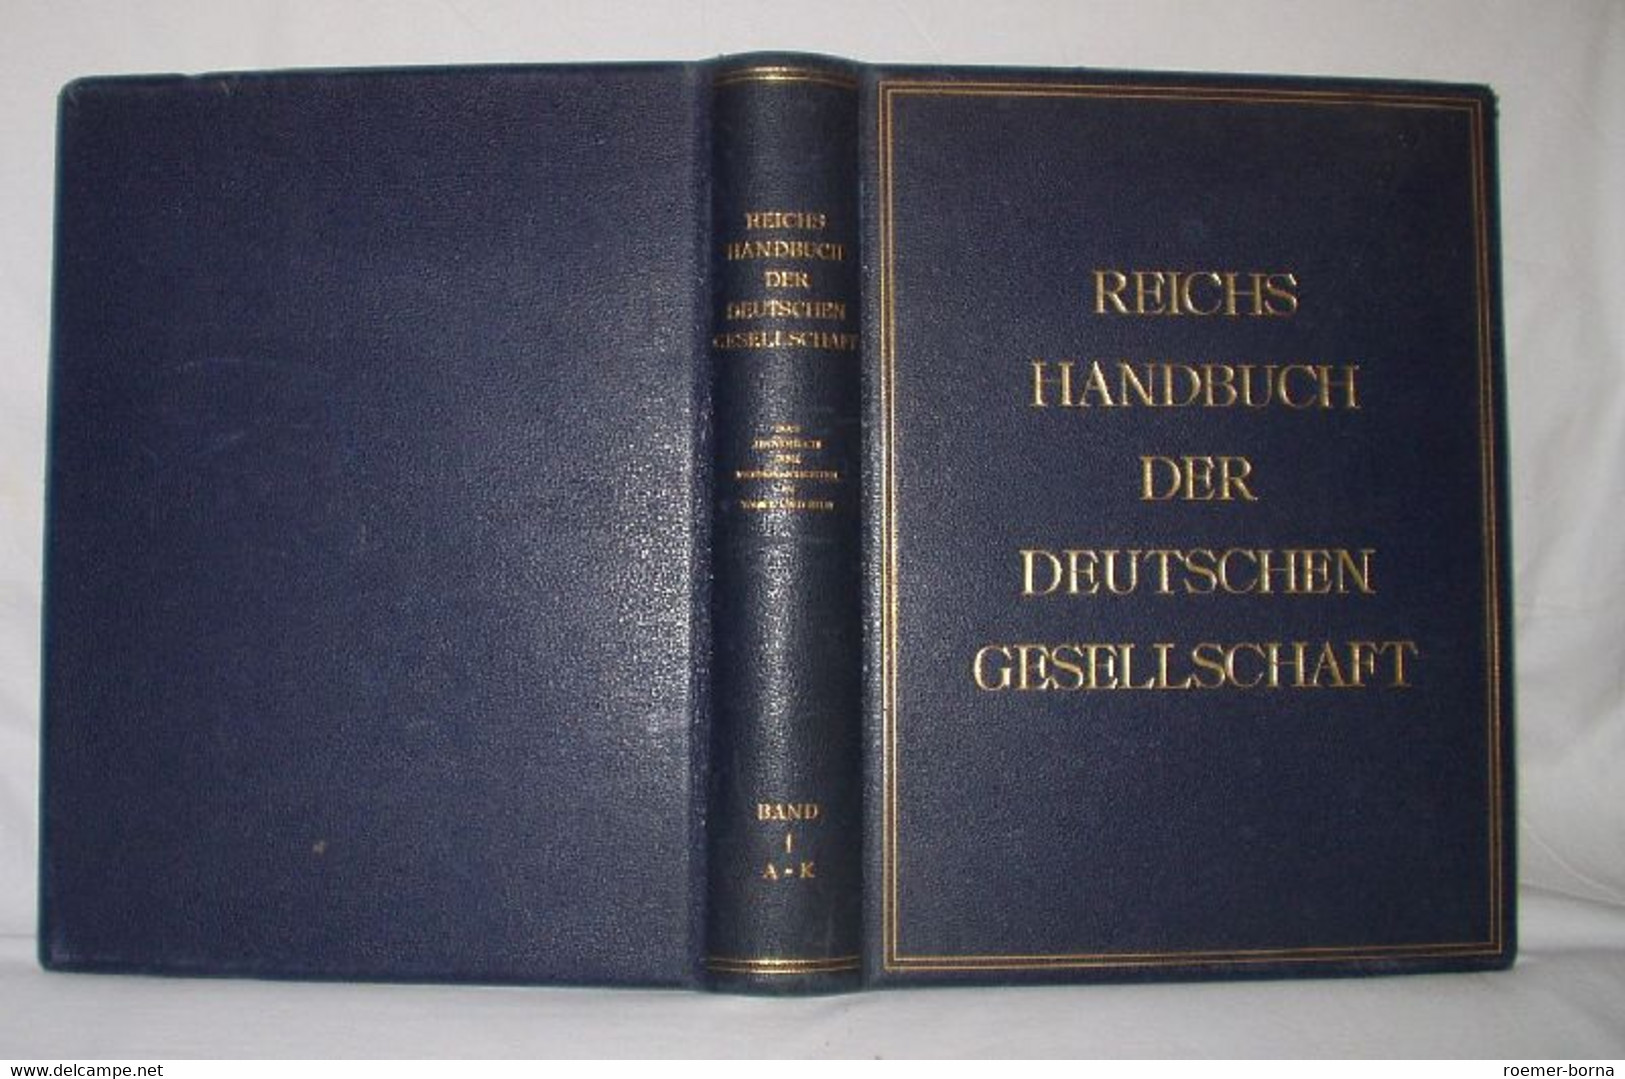 Reichs Handbuch Der Deutschen Gesellschaft - Hedendaagse Politiek